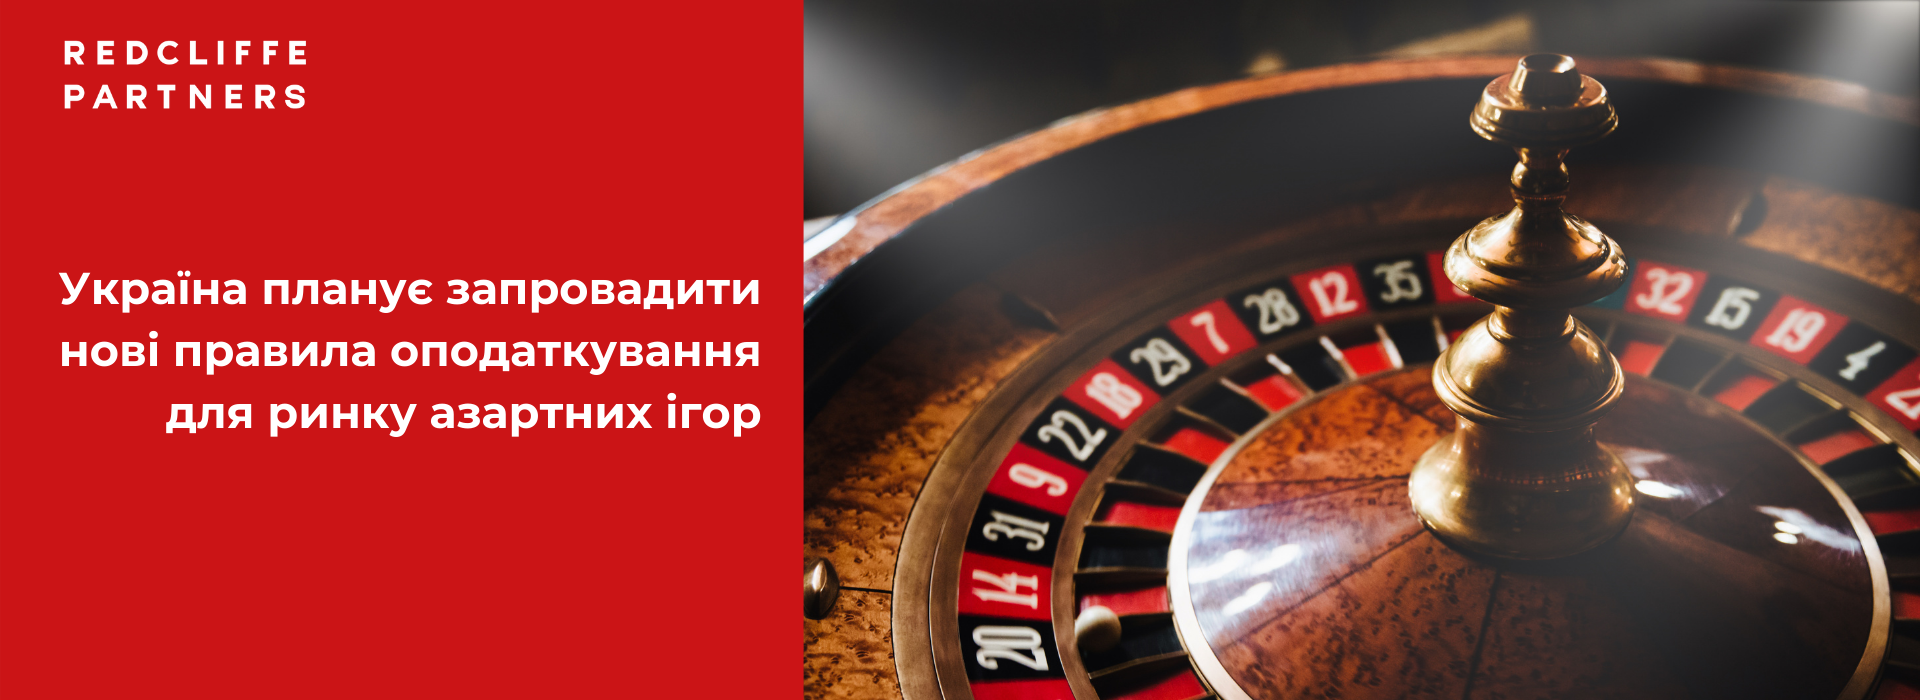 Україна планує запровадити нові правила оподаткування для ринку азартних ігор